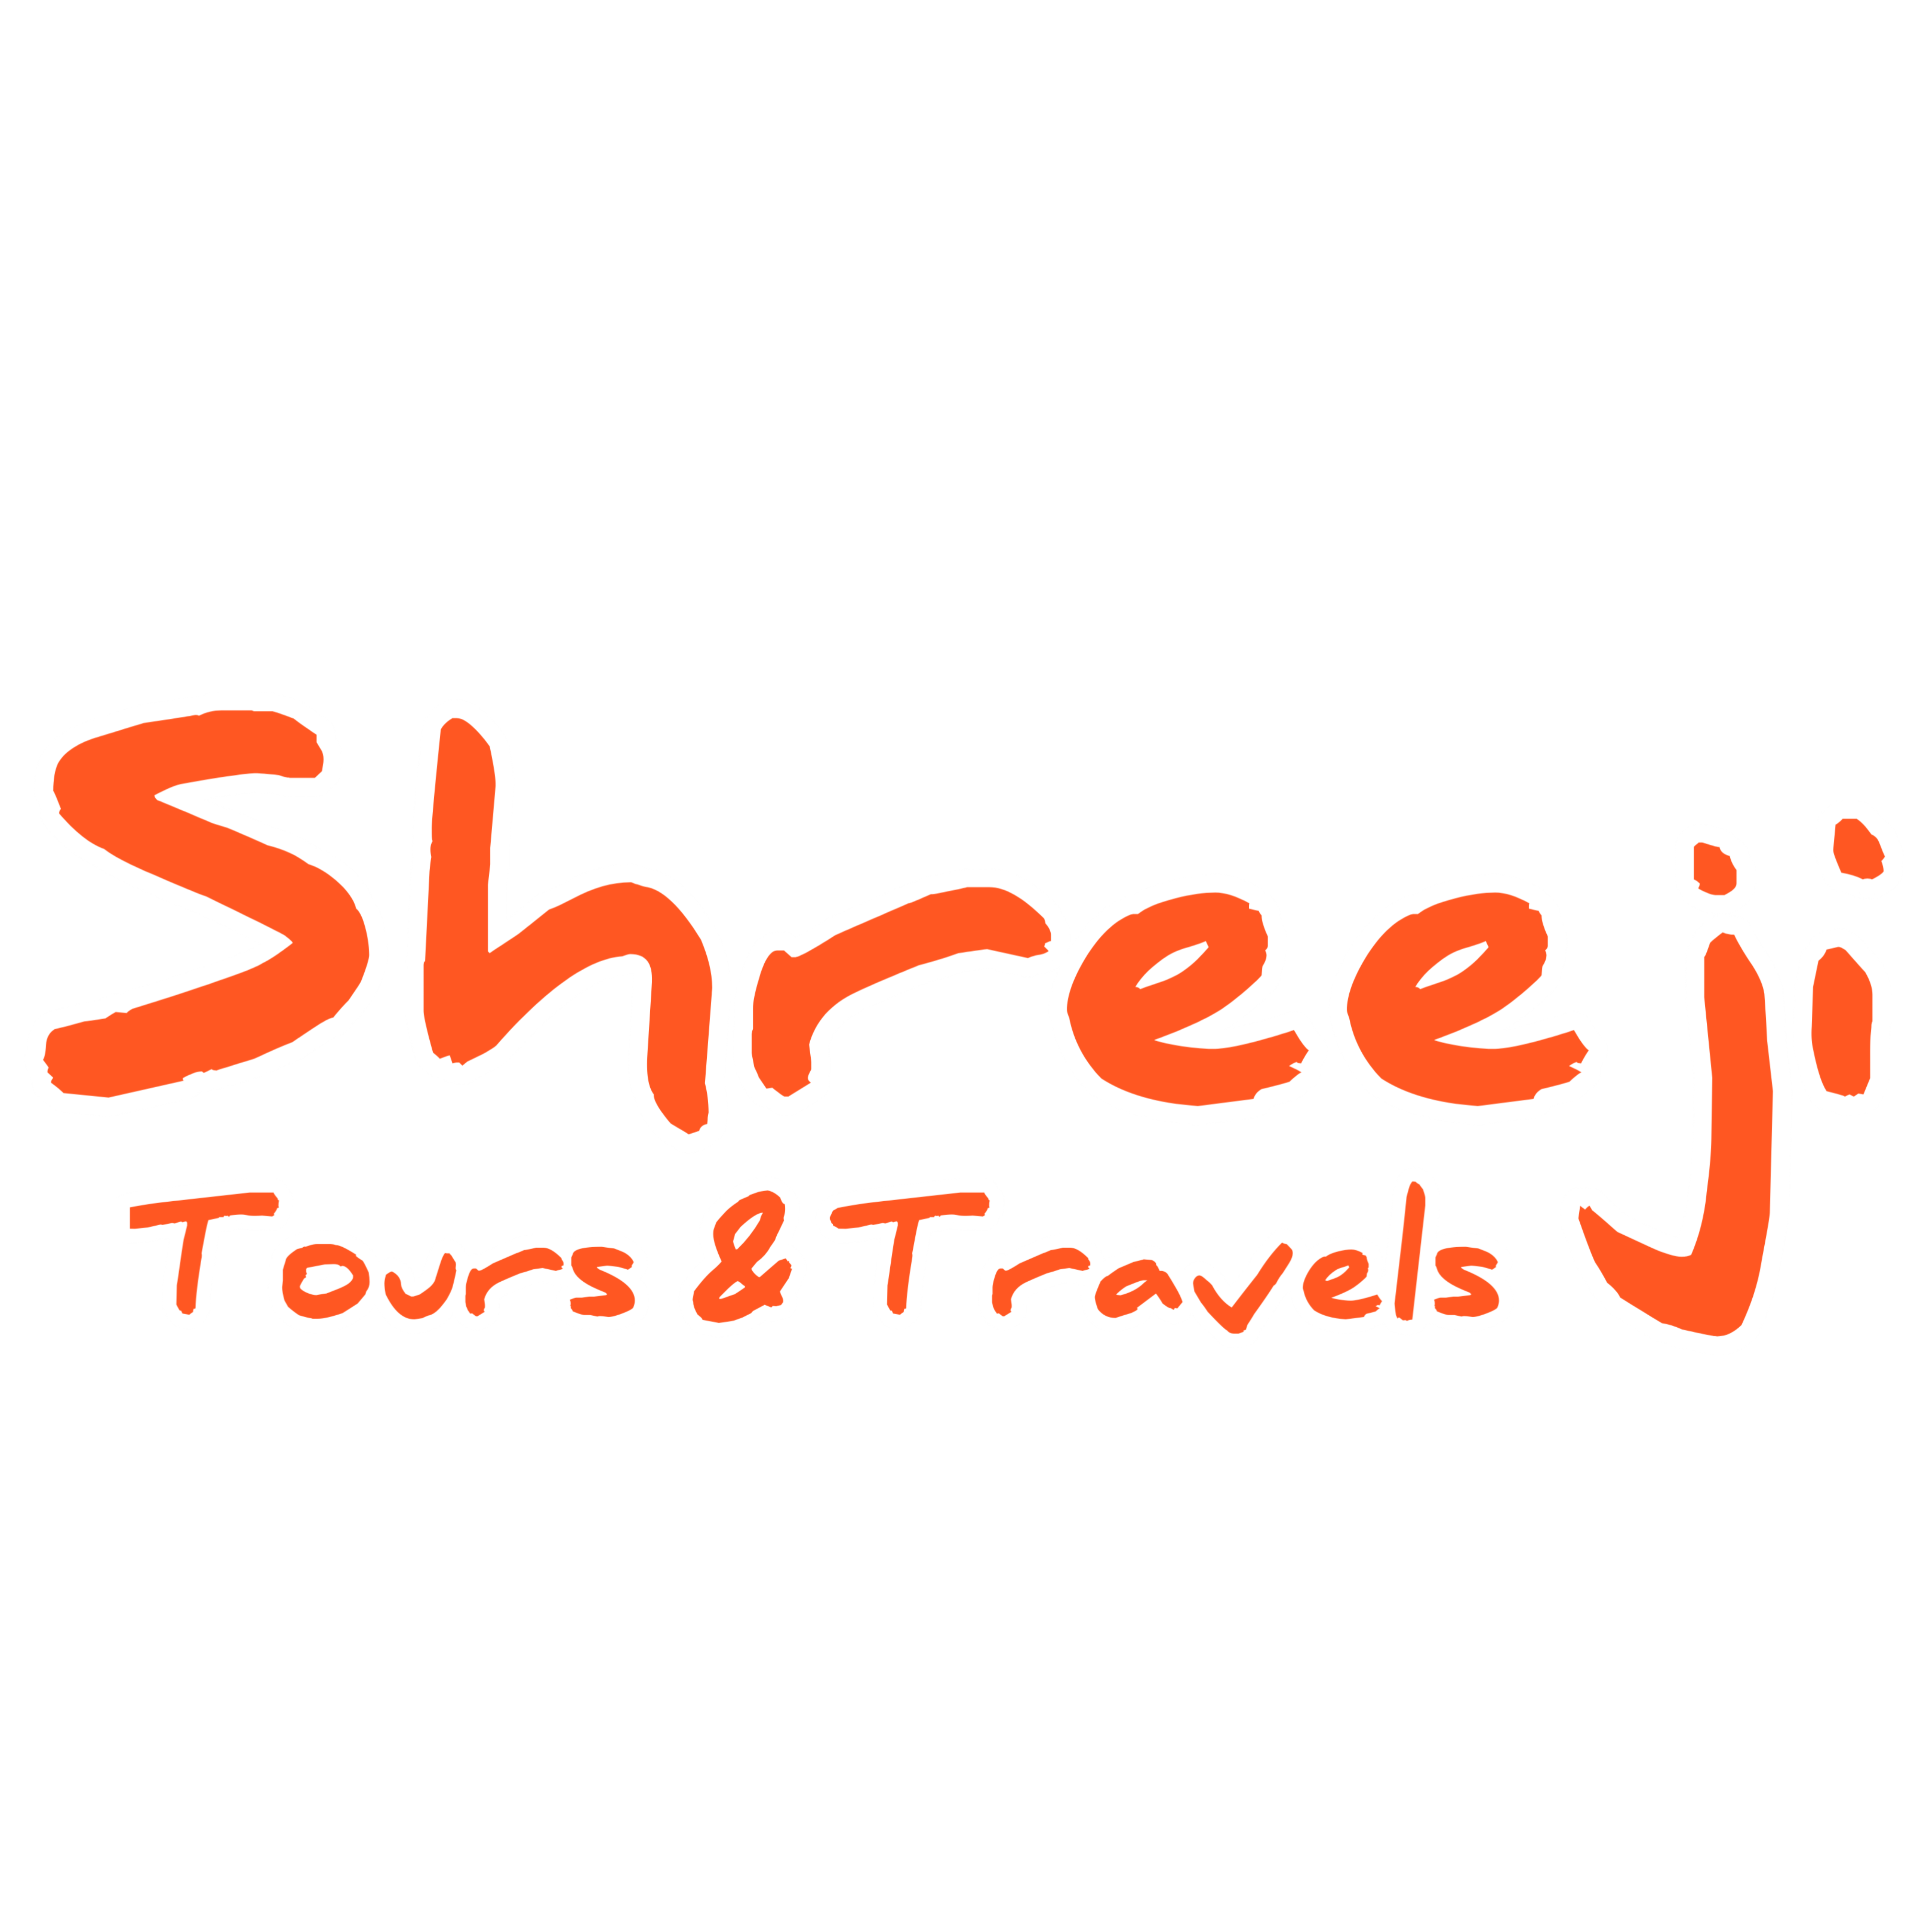 Shreeji Tours